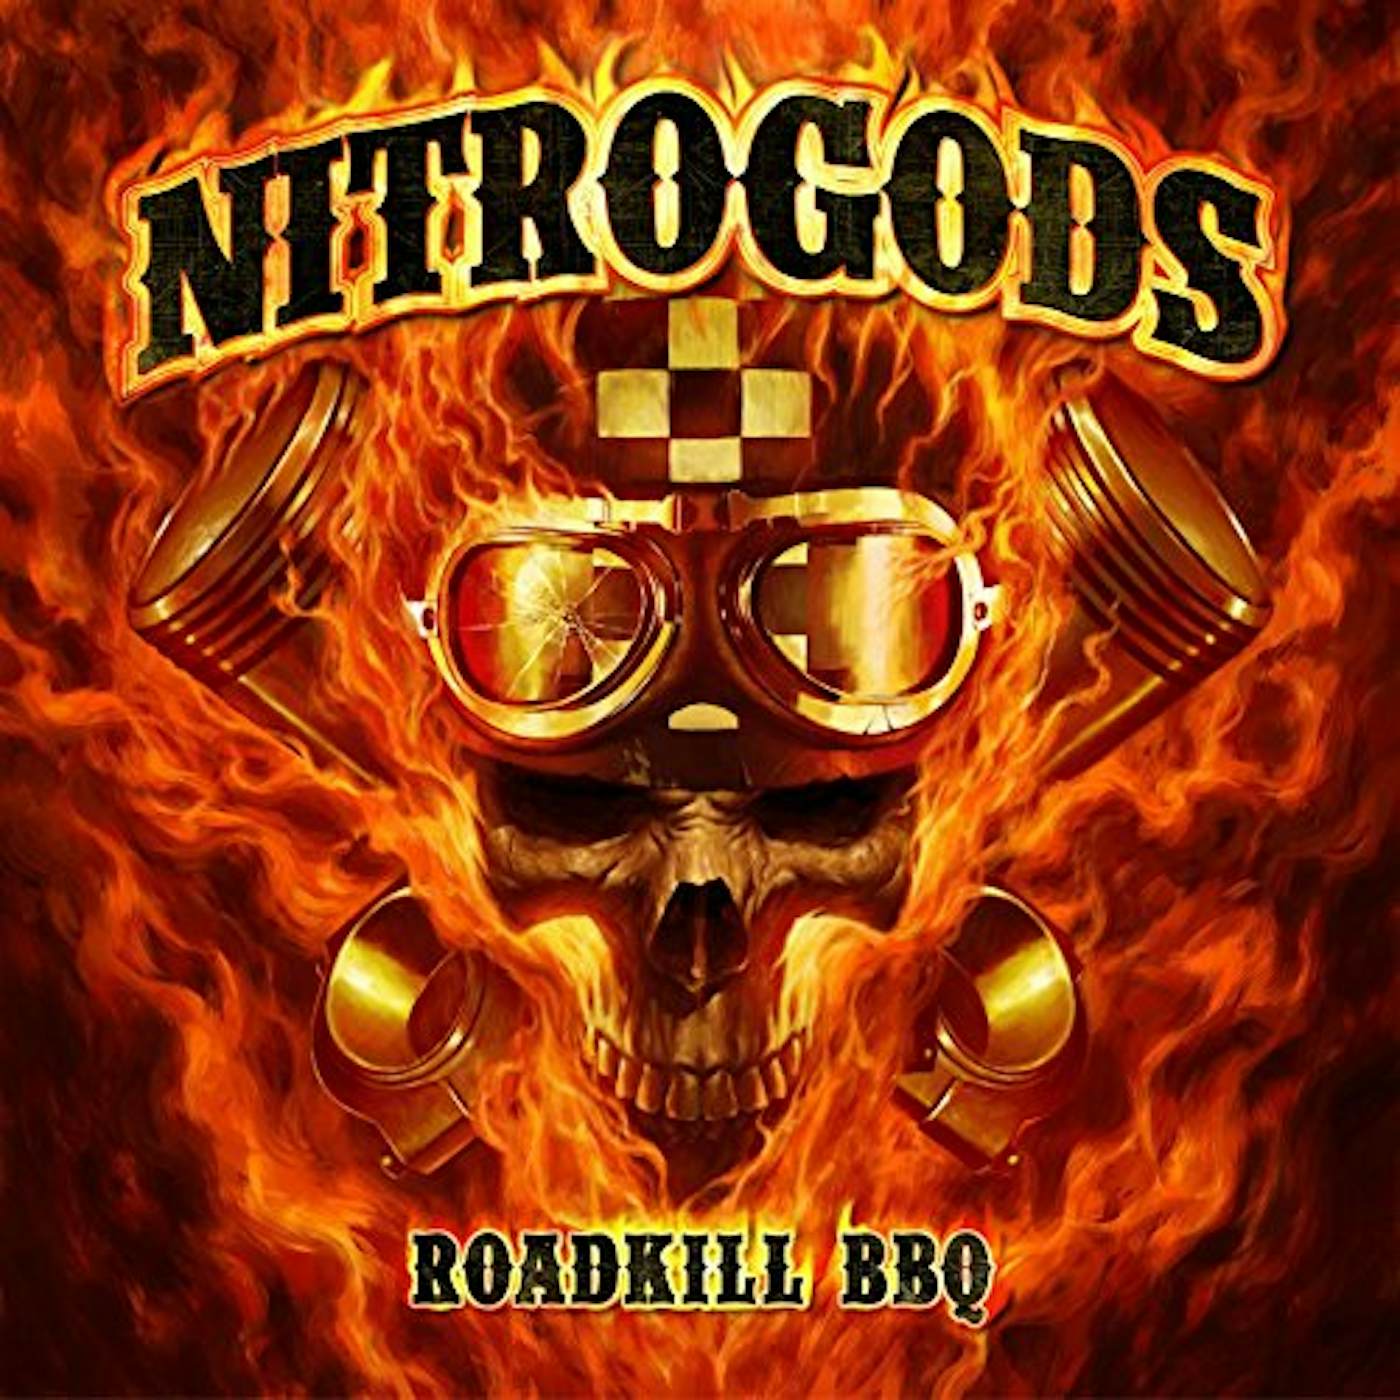 Nitrogods ROADKILL BBQ (3CD HARD BOX) CD